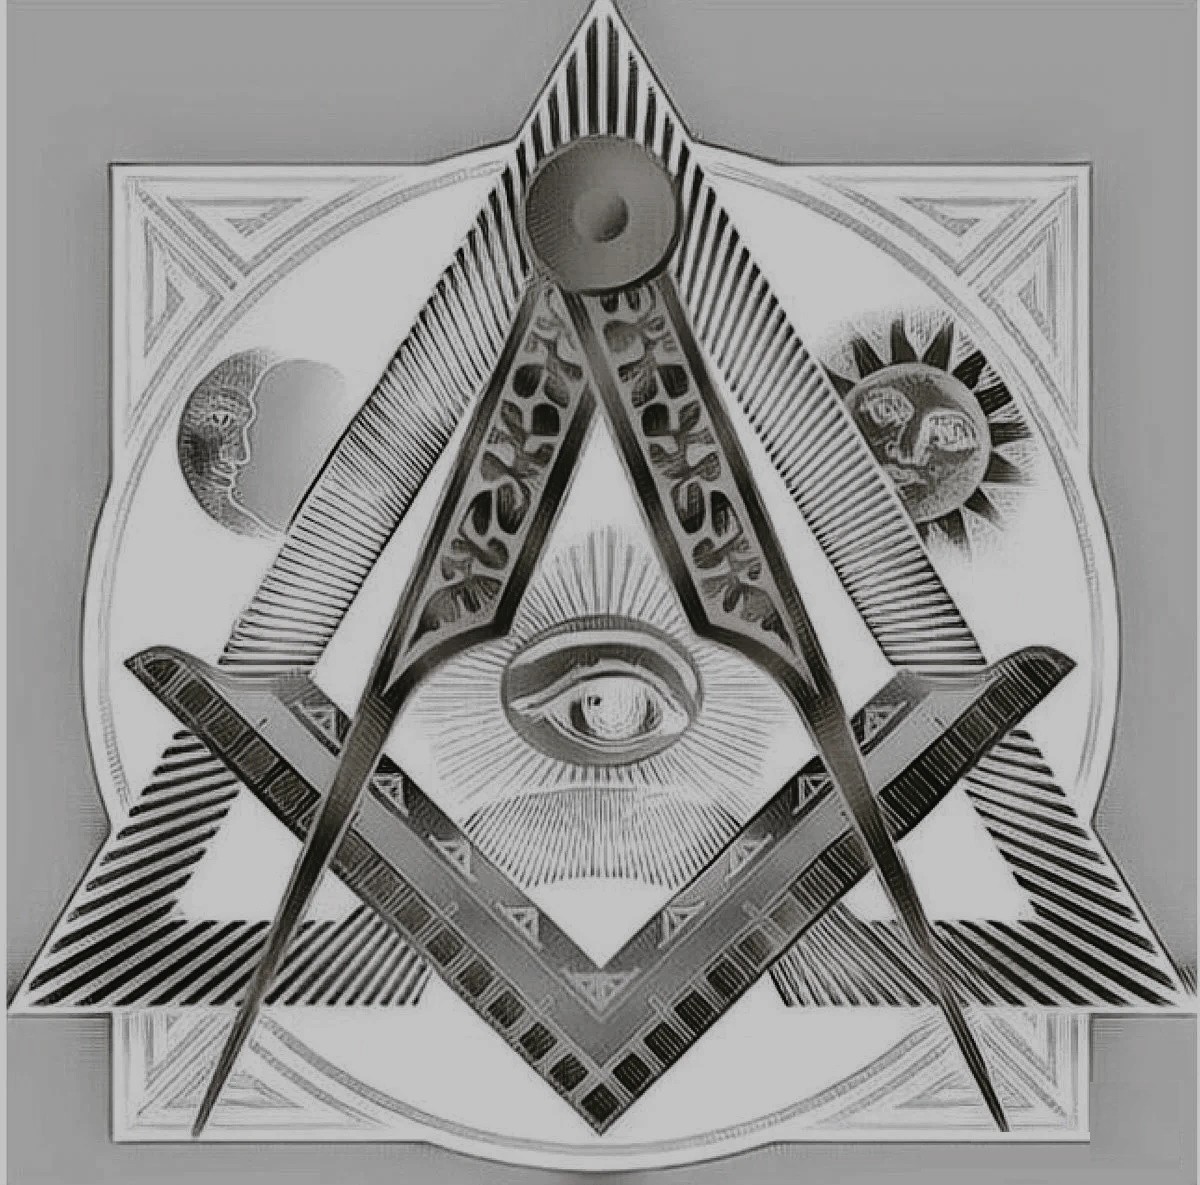 Масоны крокус. Символ вольных каменщиков масонов. Символ масонов пирамида. Знак Тайного общества масонов. Символы масонов и тайных обществ 1877г.